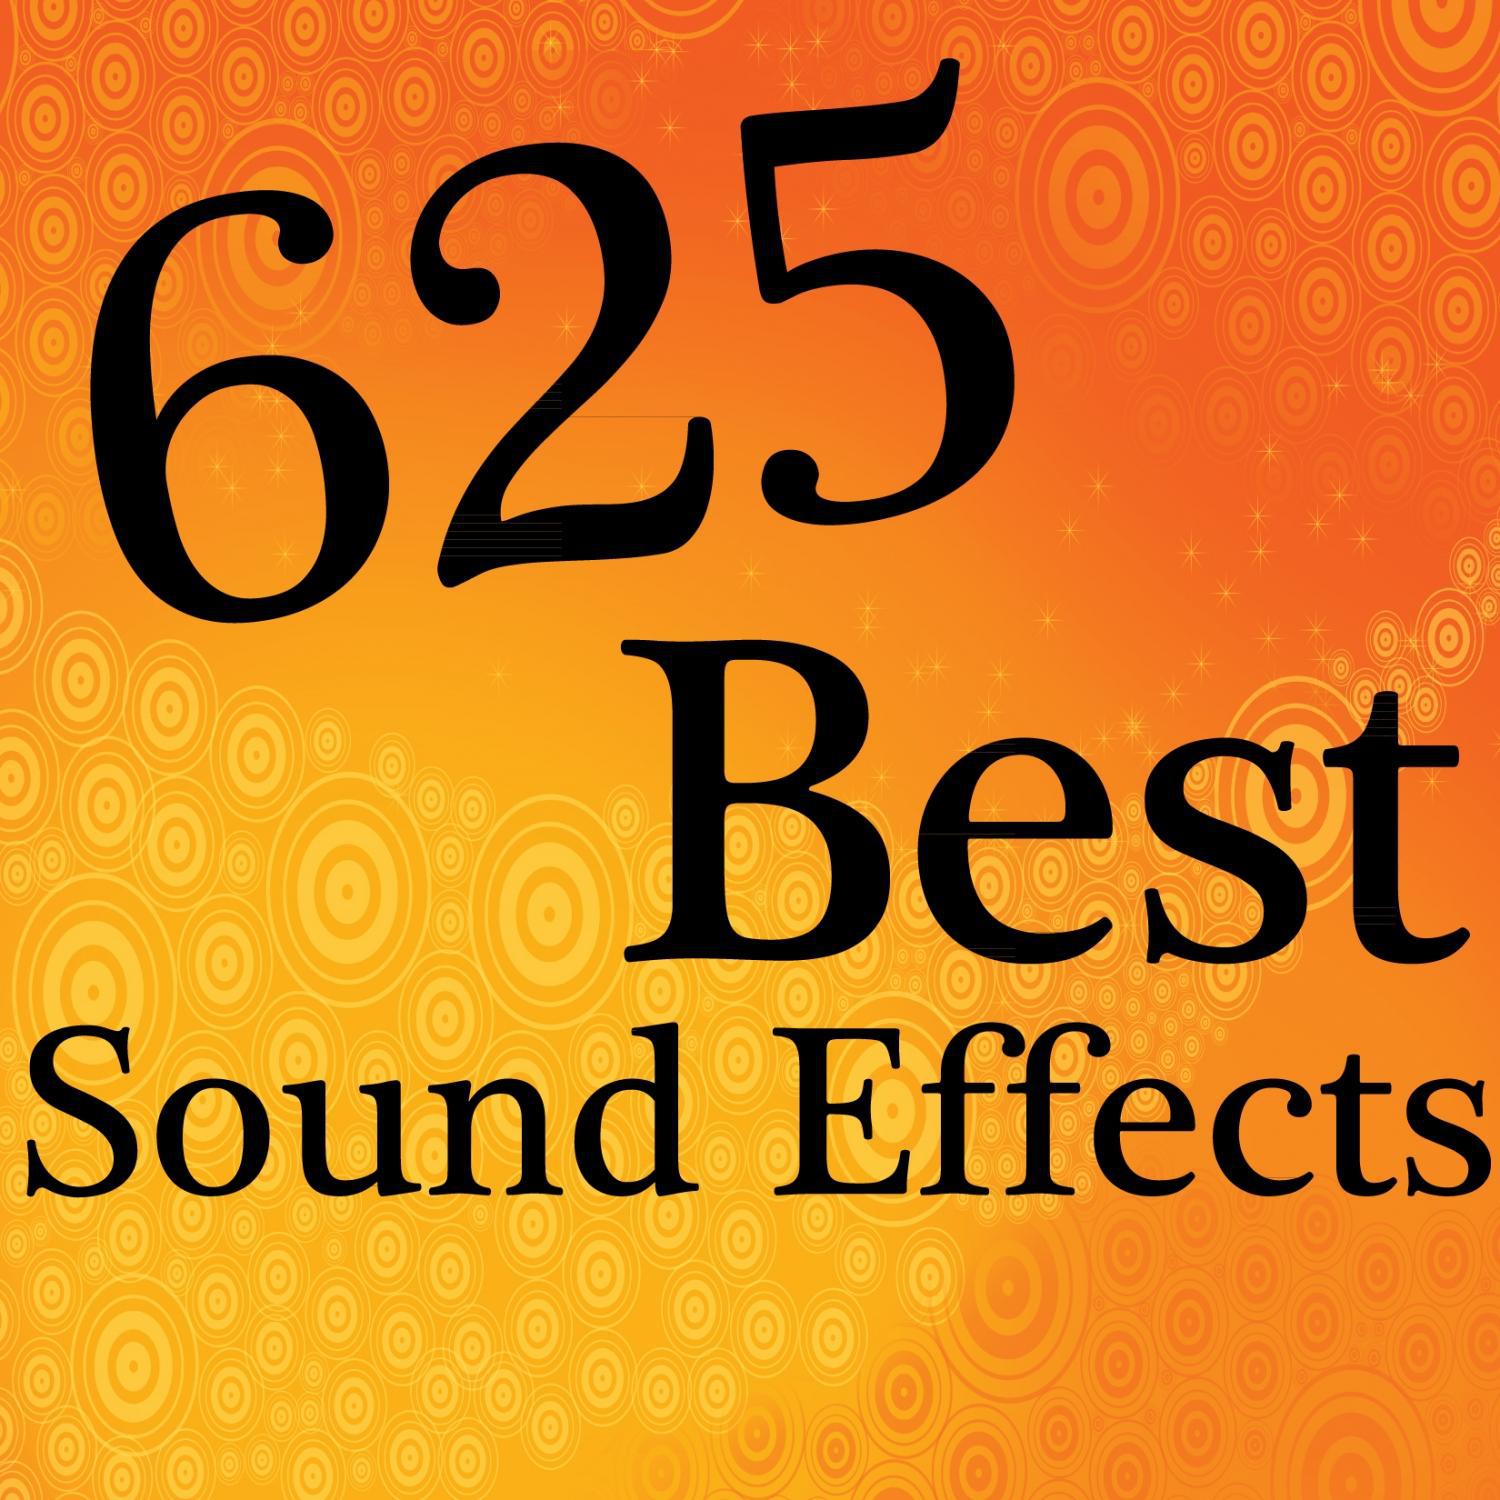 625 Best Sound Effects